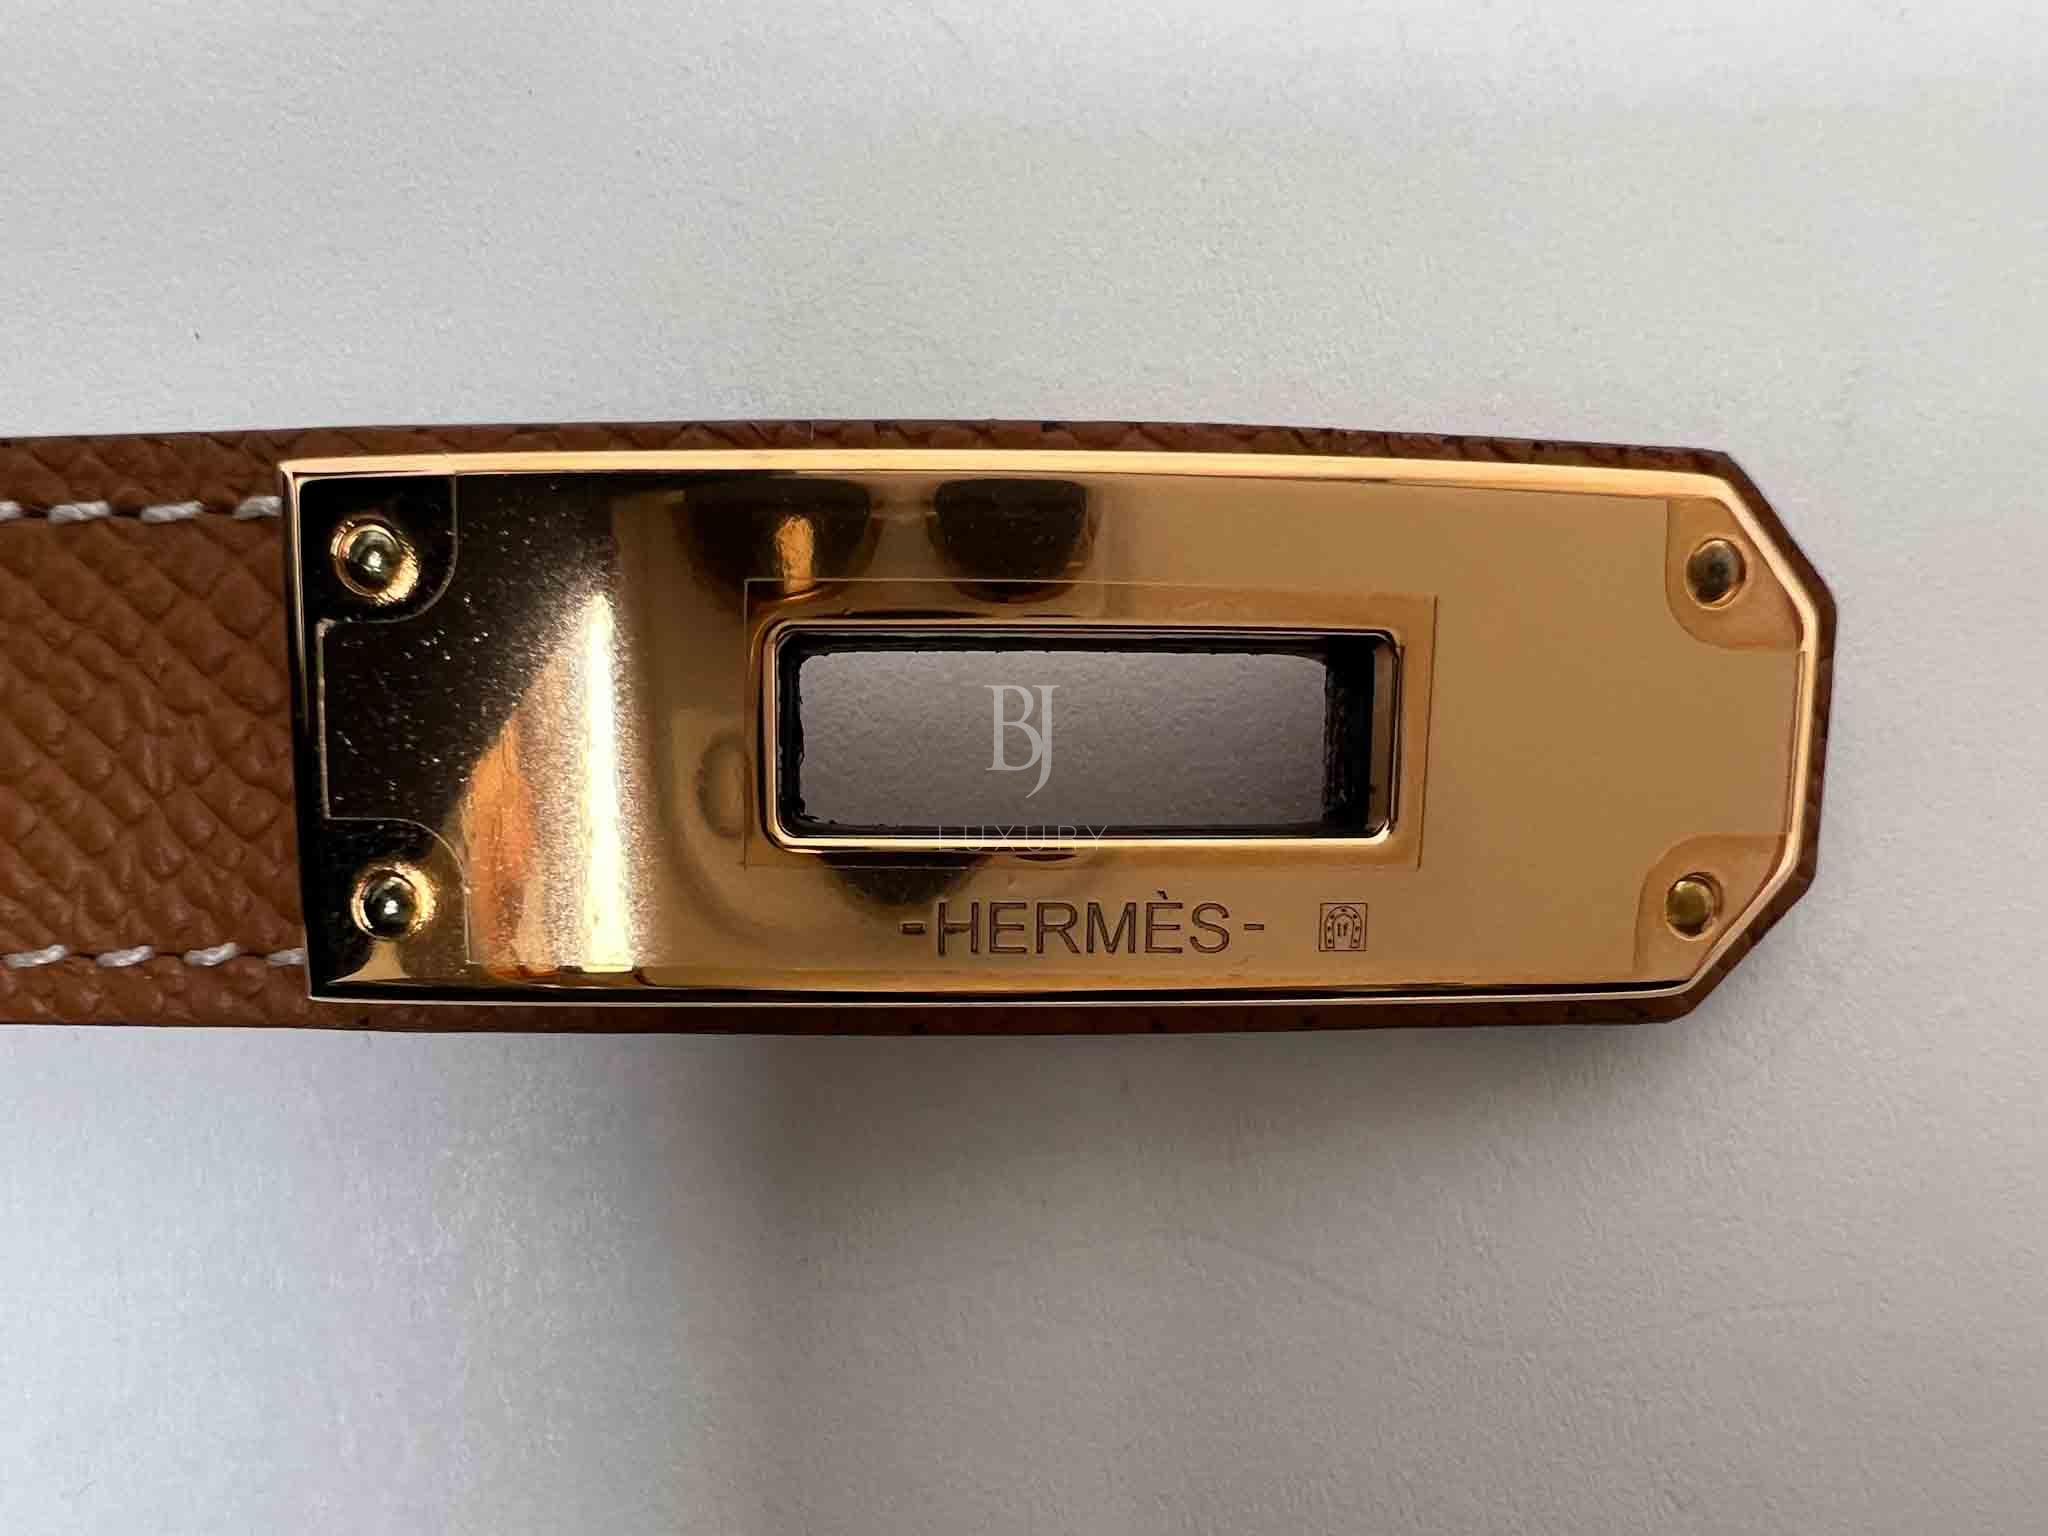 HERMES-KELLYBELT-FREESIZE-GOLD-EPSOM-Photo 28-7-23, 5 36 36 PM.jpg